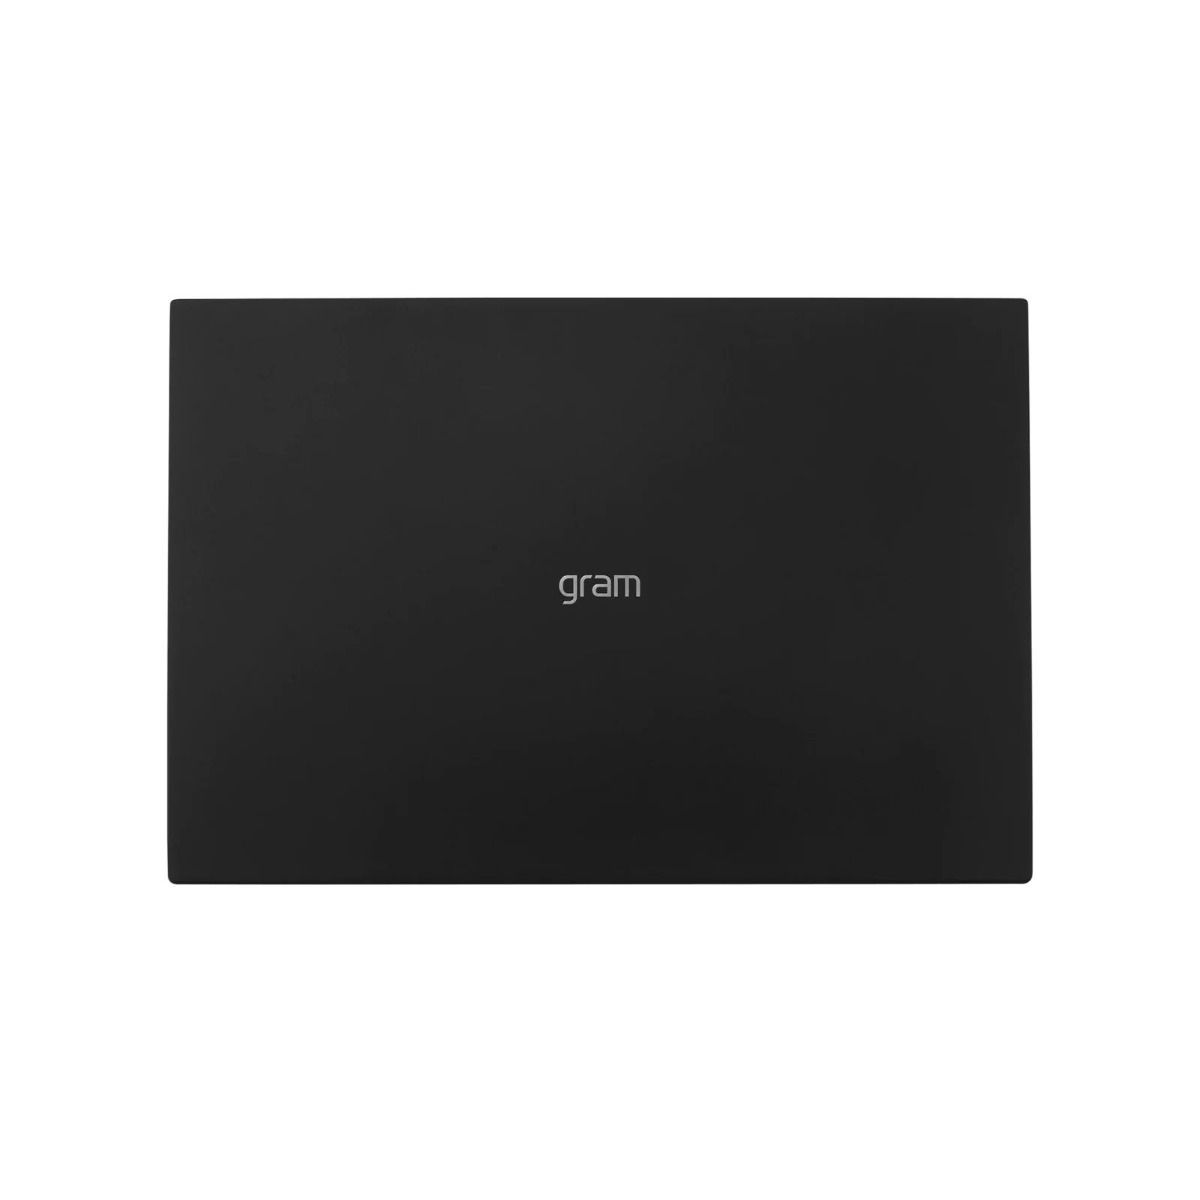 LG gram 16Z90Q 16" Ultra-Lightweight Laptop Intel i7-1260P 16GB 1TB